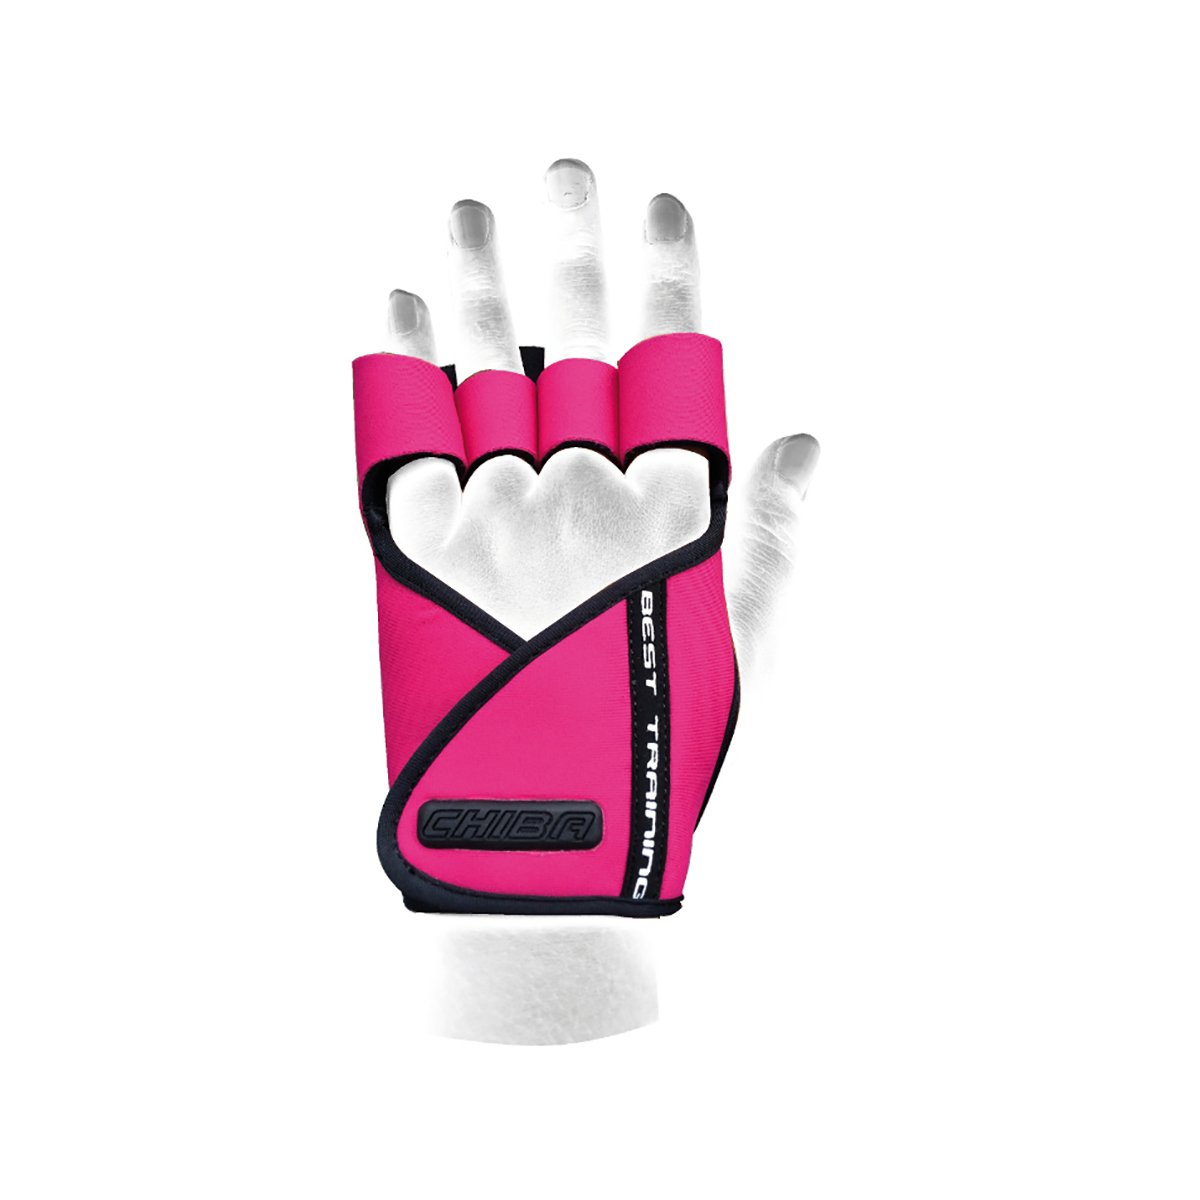 E-shop Dámske fitness rukavice Lady Motivation Pink - Chiba, veľ. M